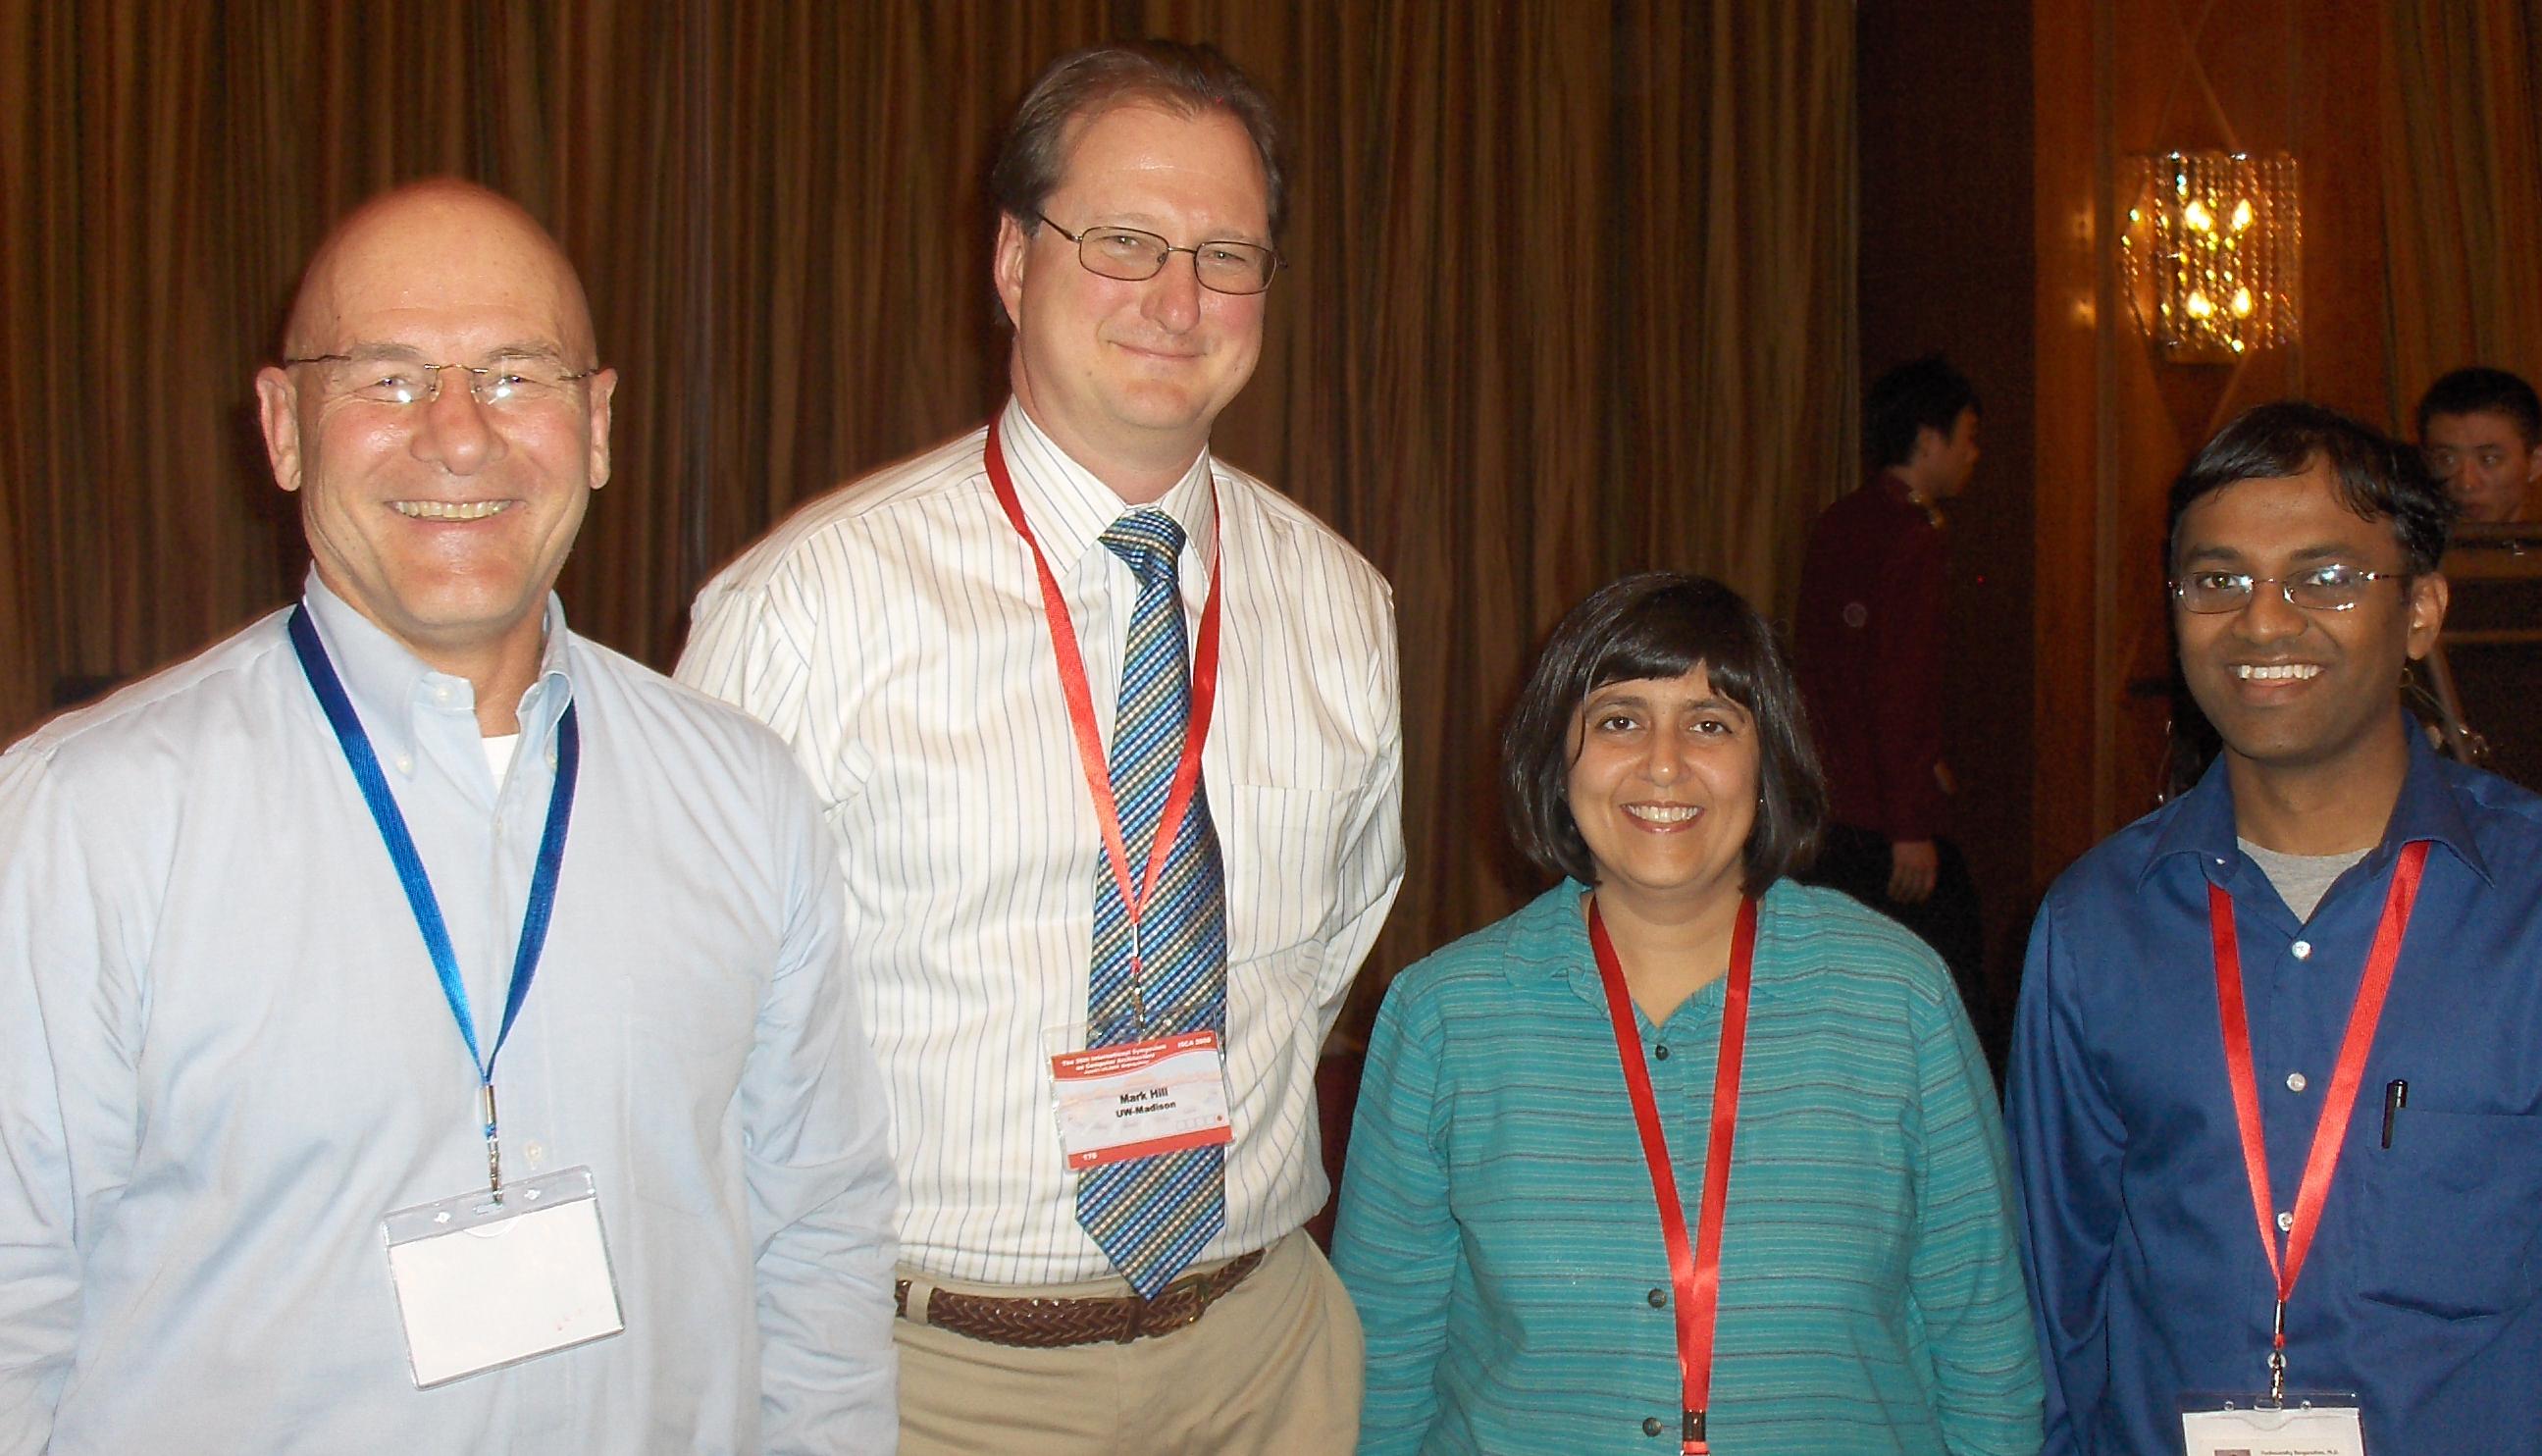 ISCA 2008 Picture of David Patterson, Mark Hill, Sarita Adve, and Partha
Ranganathan